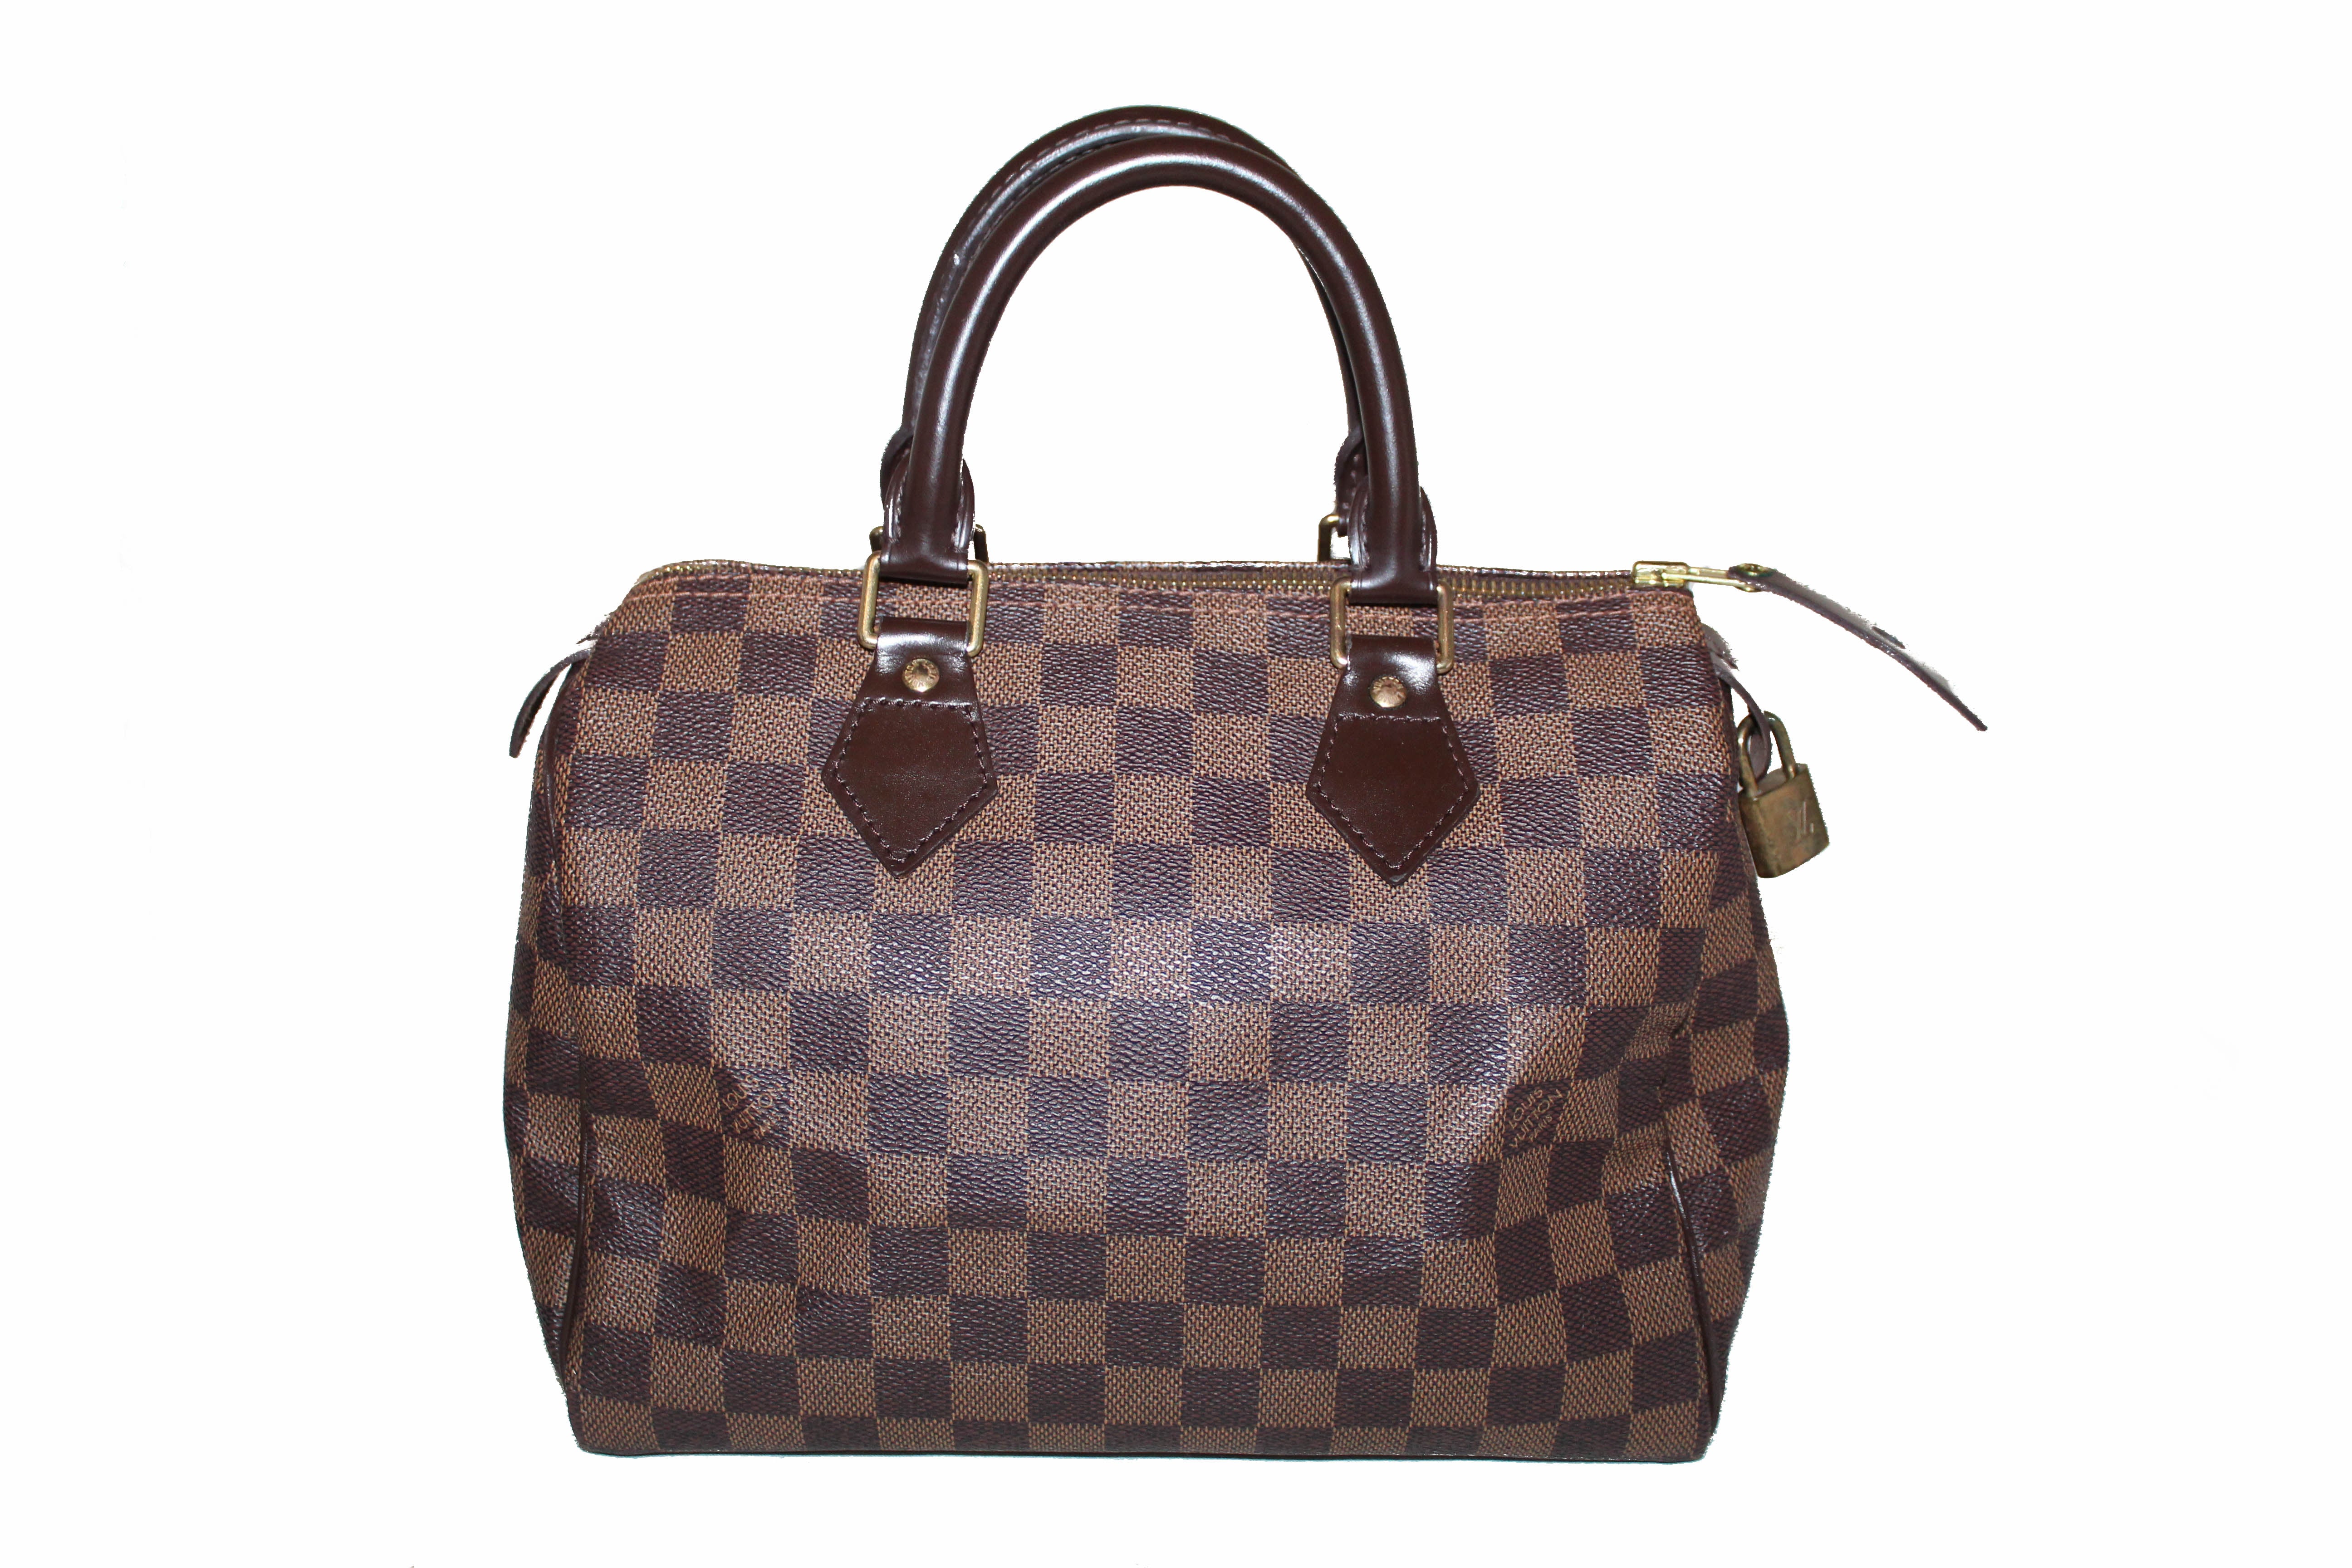 Authentic Louis Vuitton Damier Ebene Speedy 25 Hand Bag – Paris Station Shop